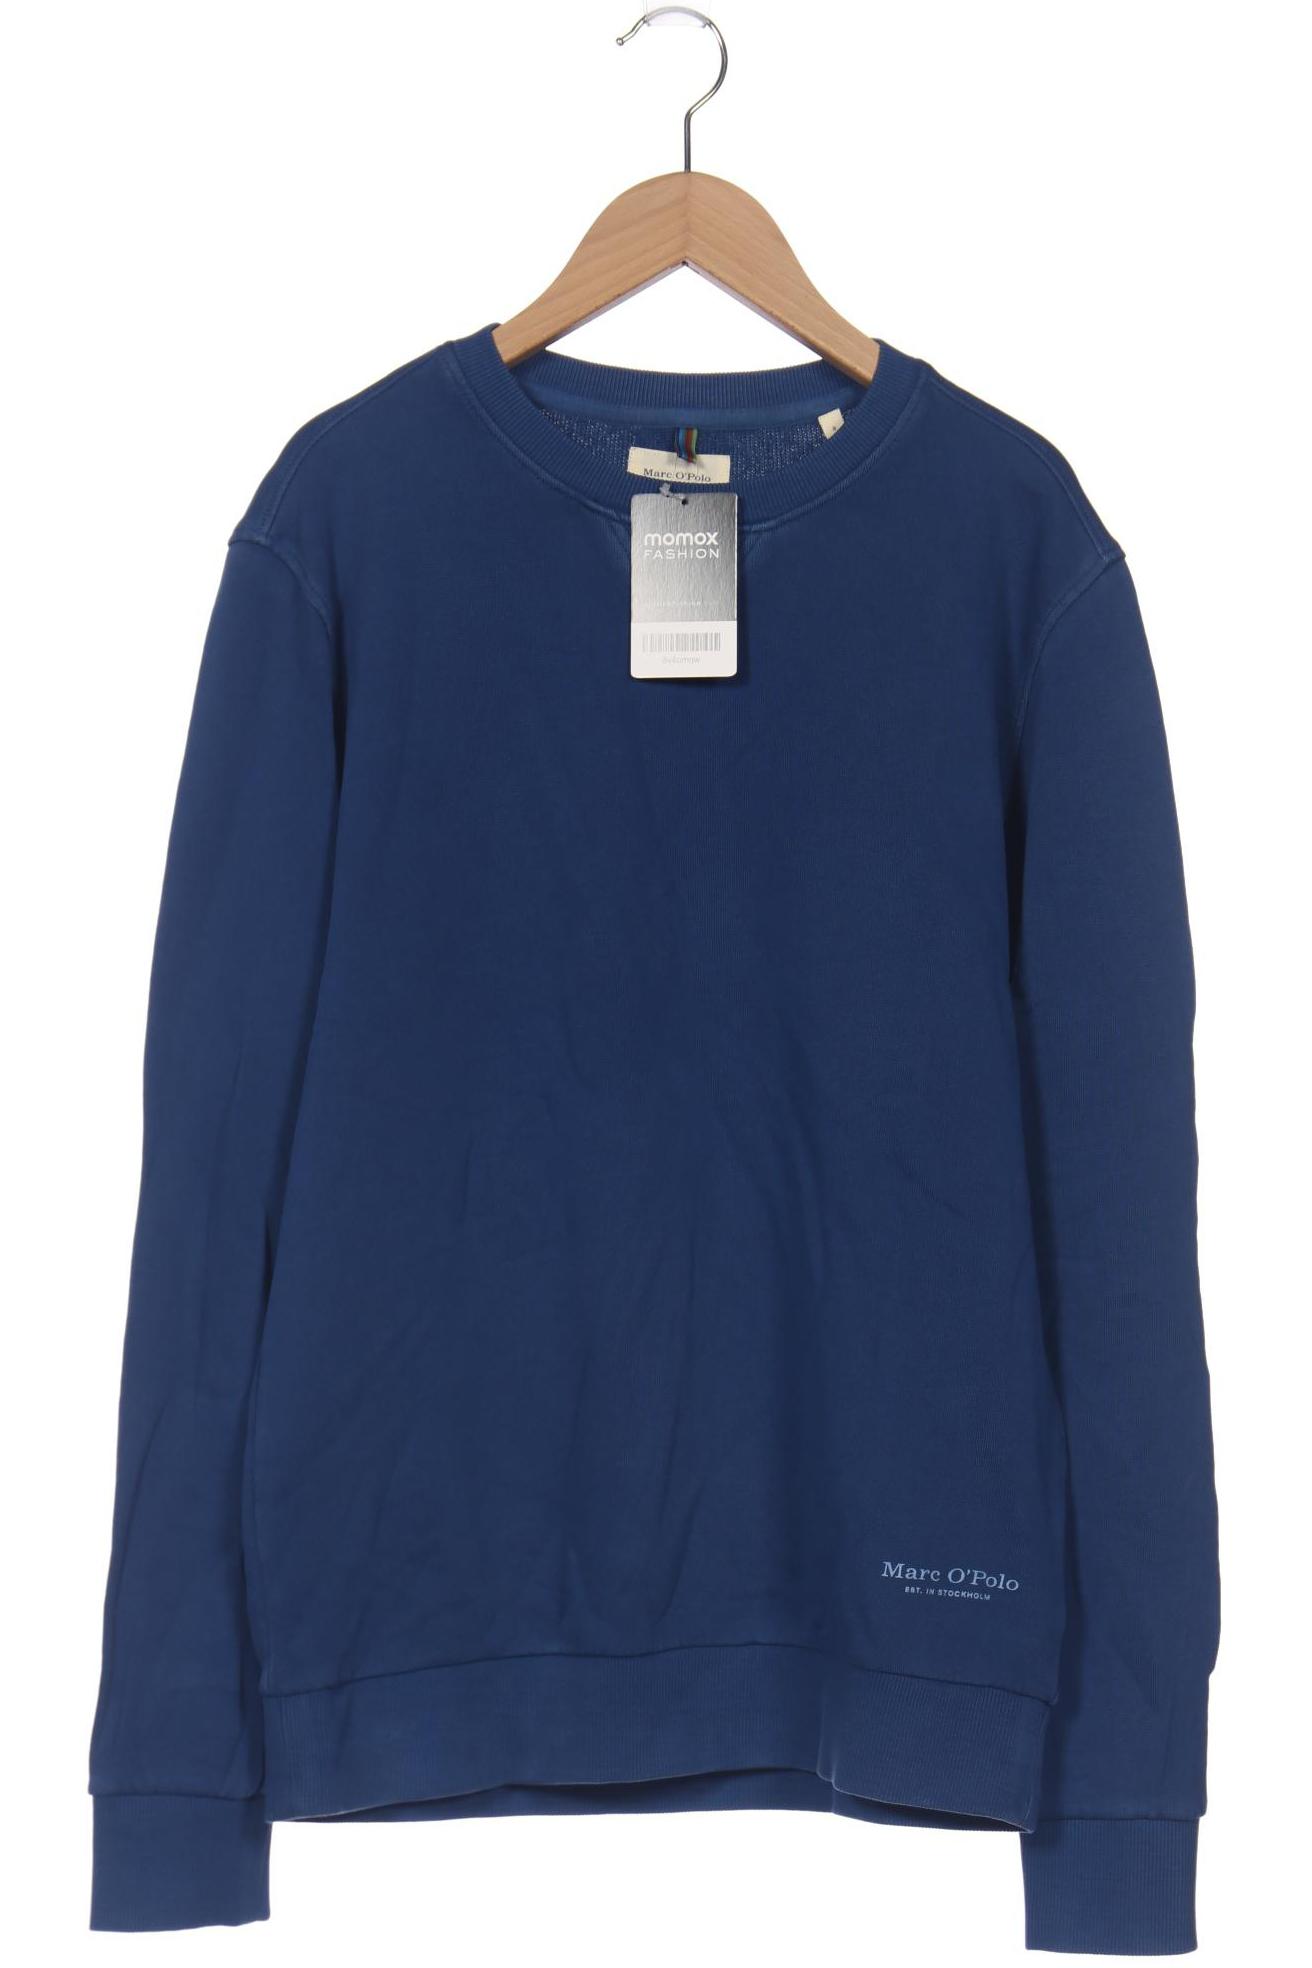 Marc O Polo Herren Sweatshirt, blau, Gr. 46 von Marc O Polo